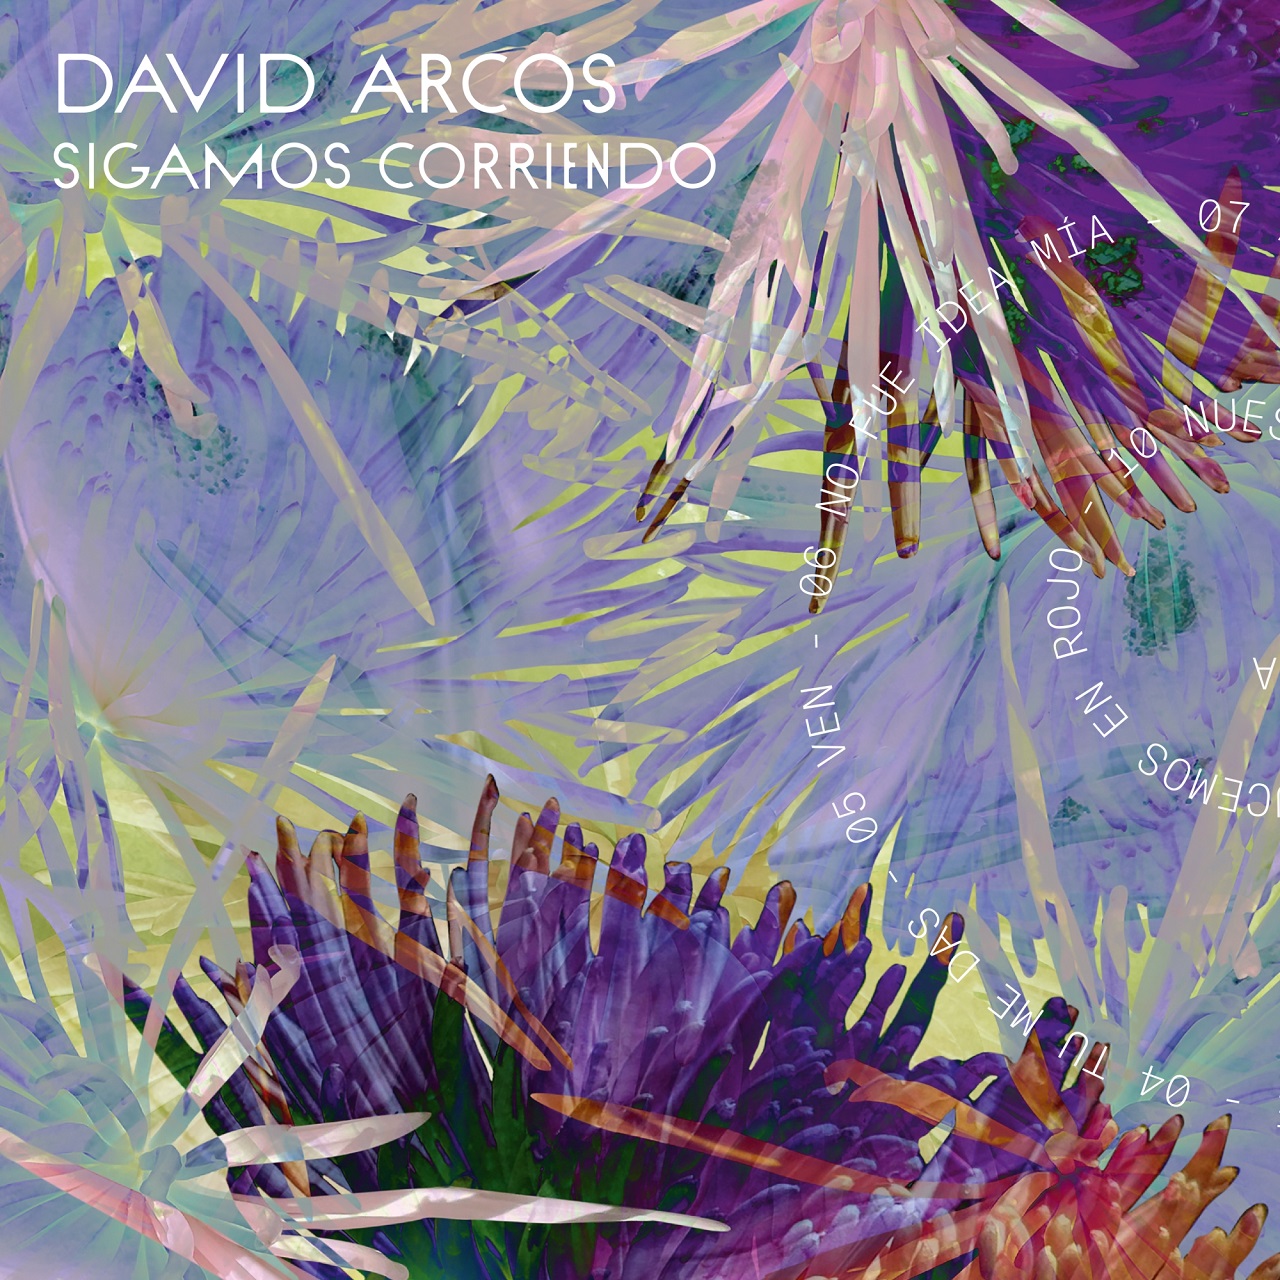 Albumcover von David Arcos Debüt "Sigamos corriendo"